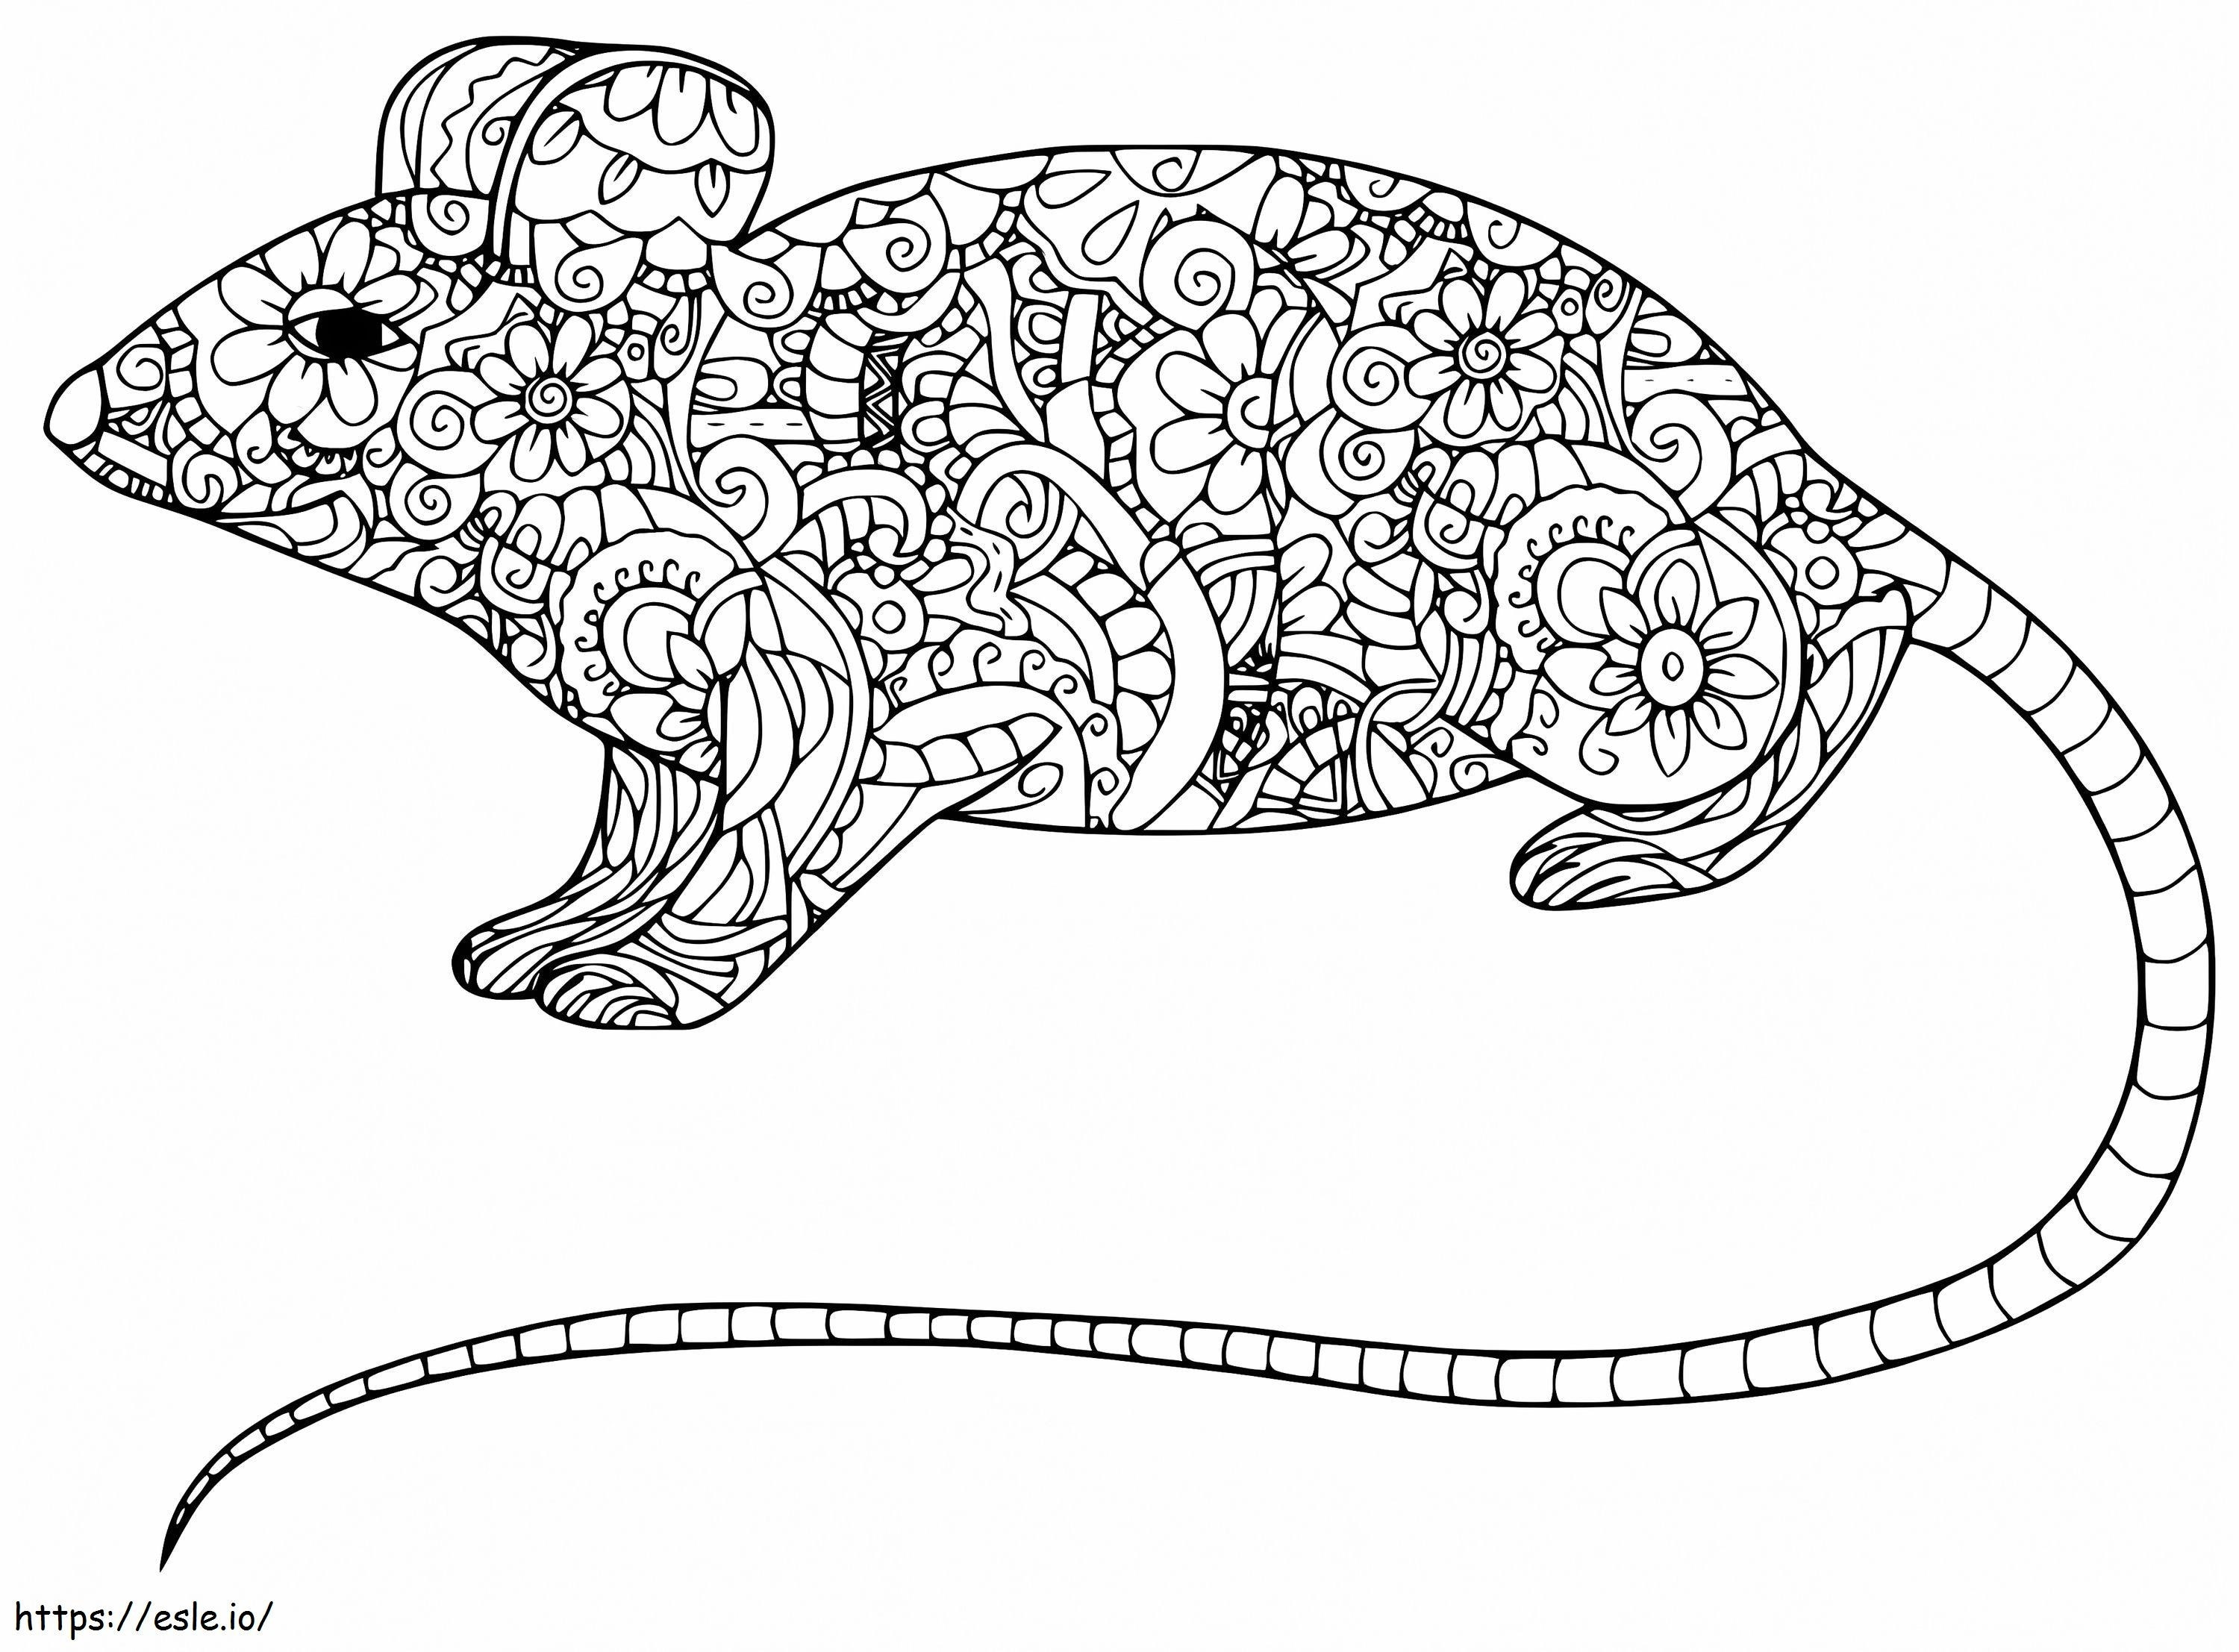 Coloriage Rat Zentangle à imprimer dessin